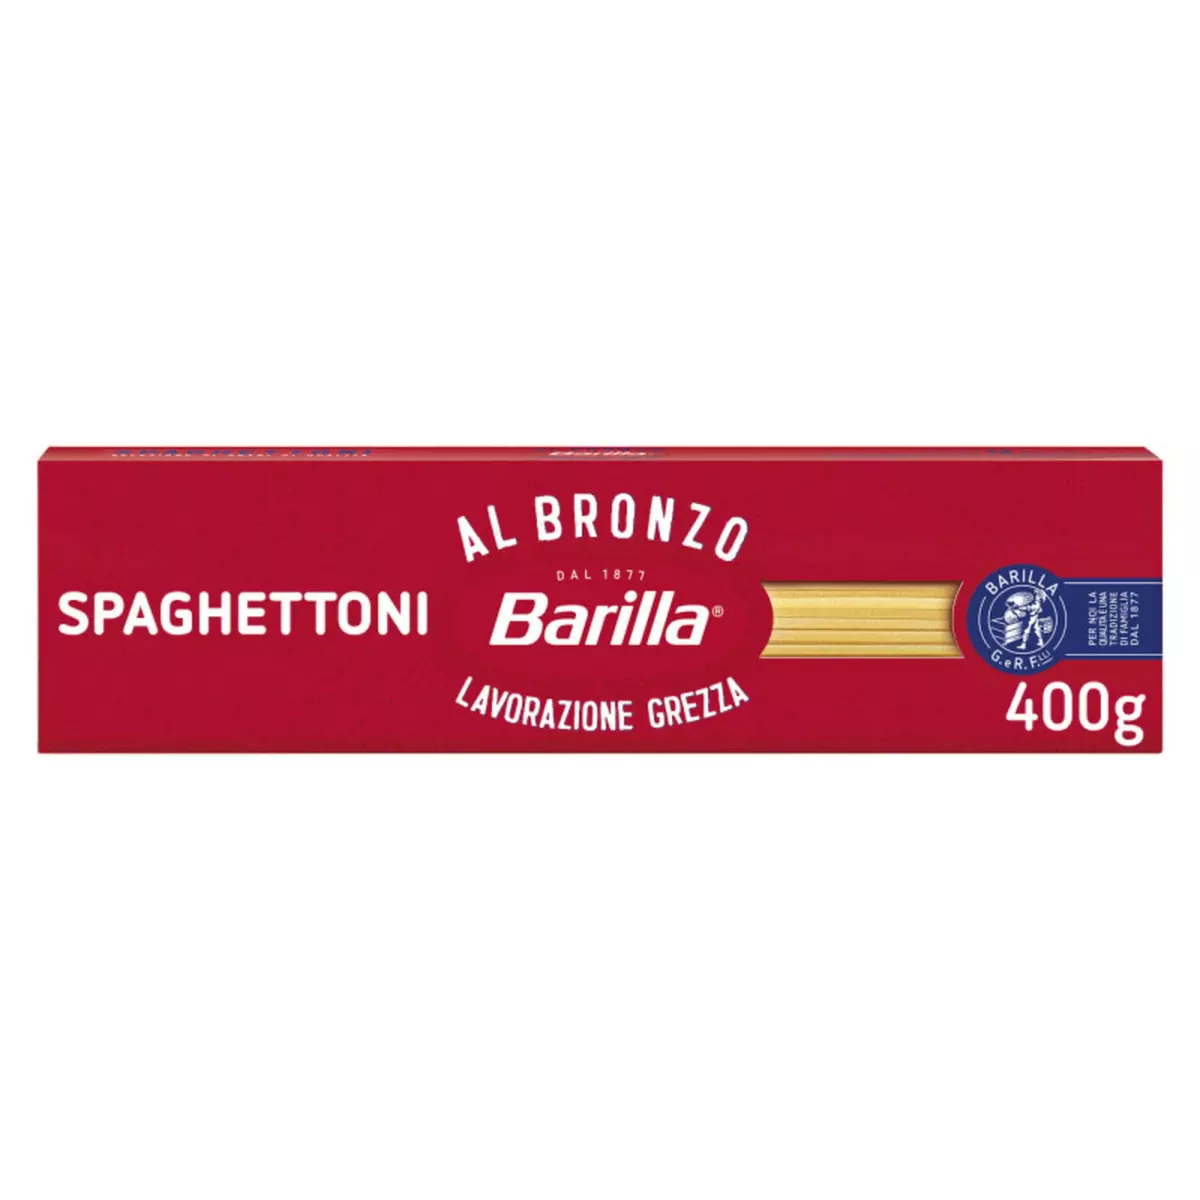 BARILLA Al bronzo spaghetti 400g